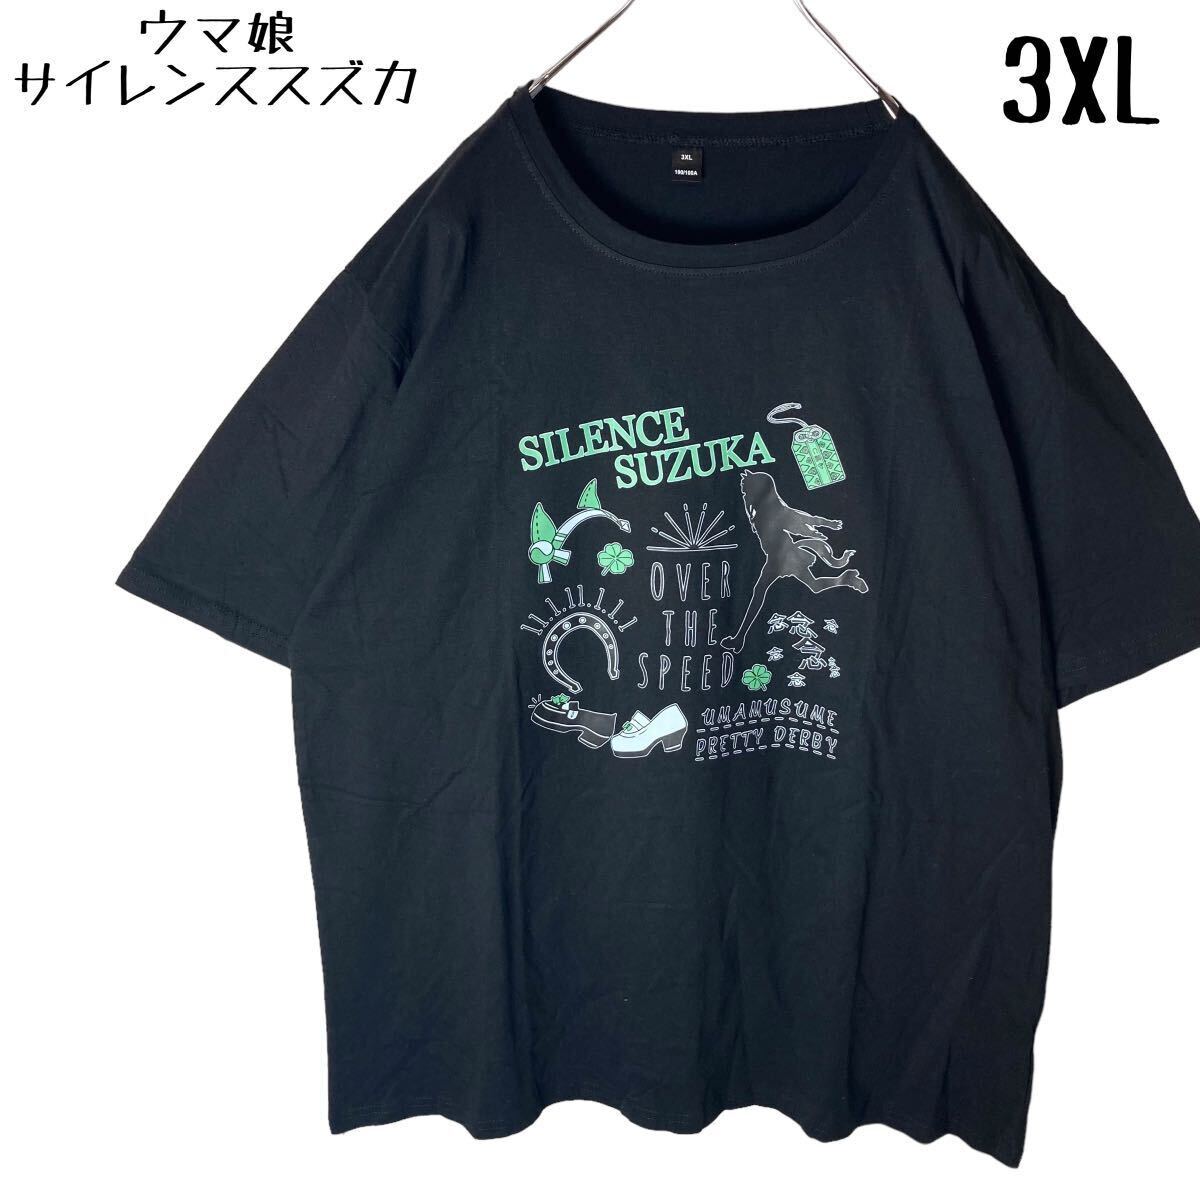 希少 ウマ娘サイレンススズカ ビッグプリントTシャツ ブラック 3XLサイズ